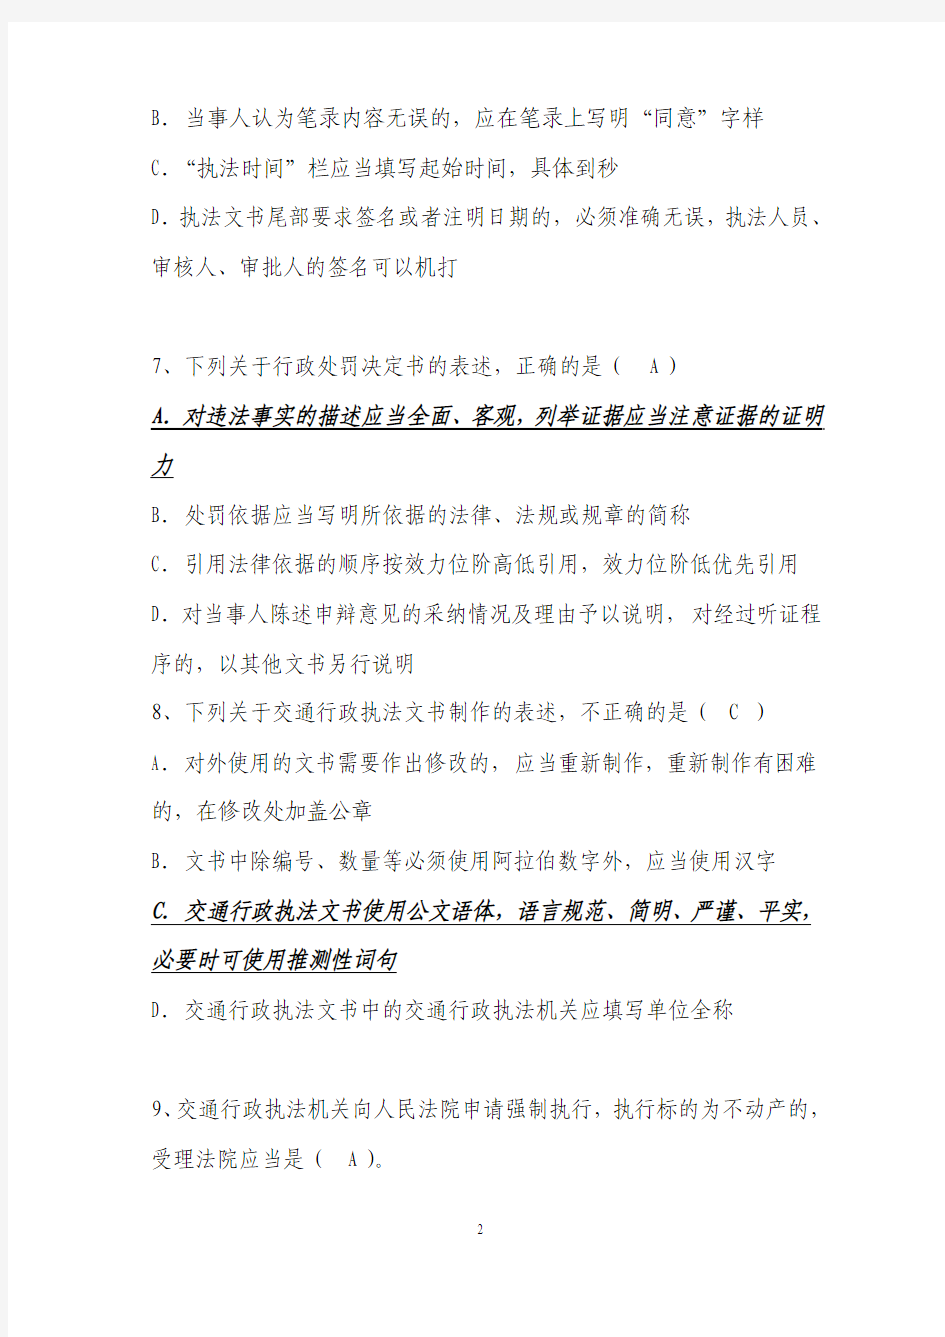 2012年四川省交通运输执法人员换证考试 综合类复习题(运政海事答案不全)